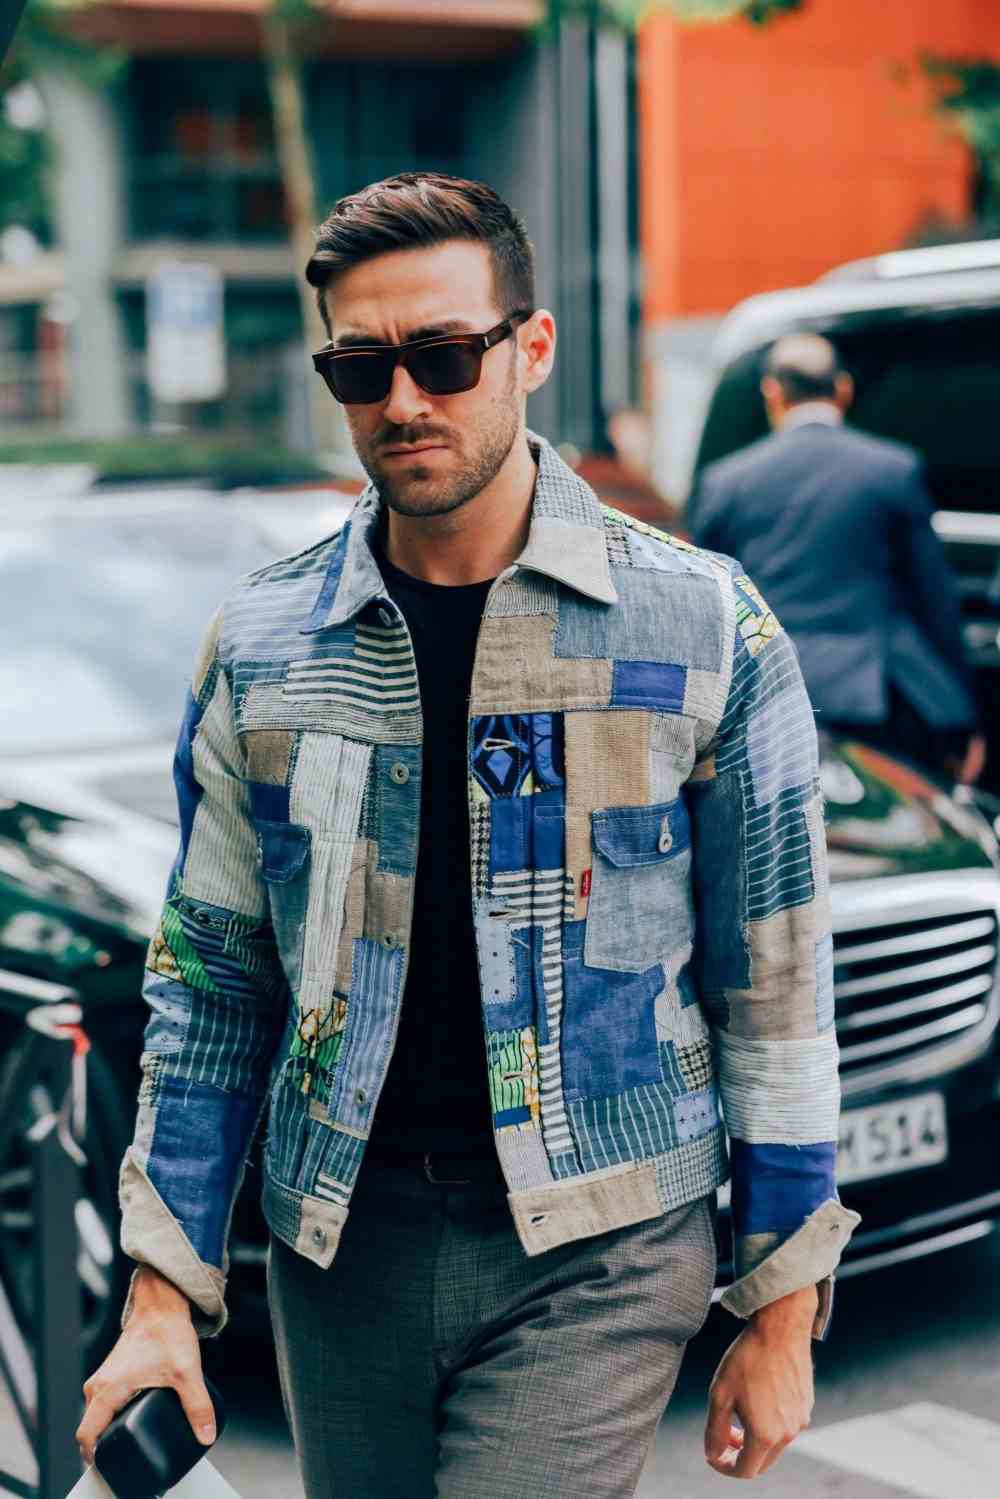 novo estilo para homem com uma jaqueta jeans curta de cores e peças diferentes